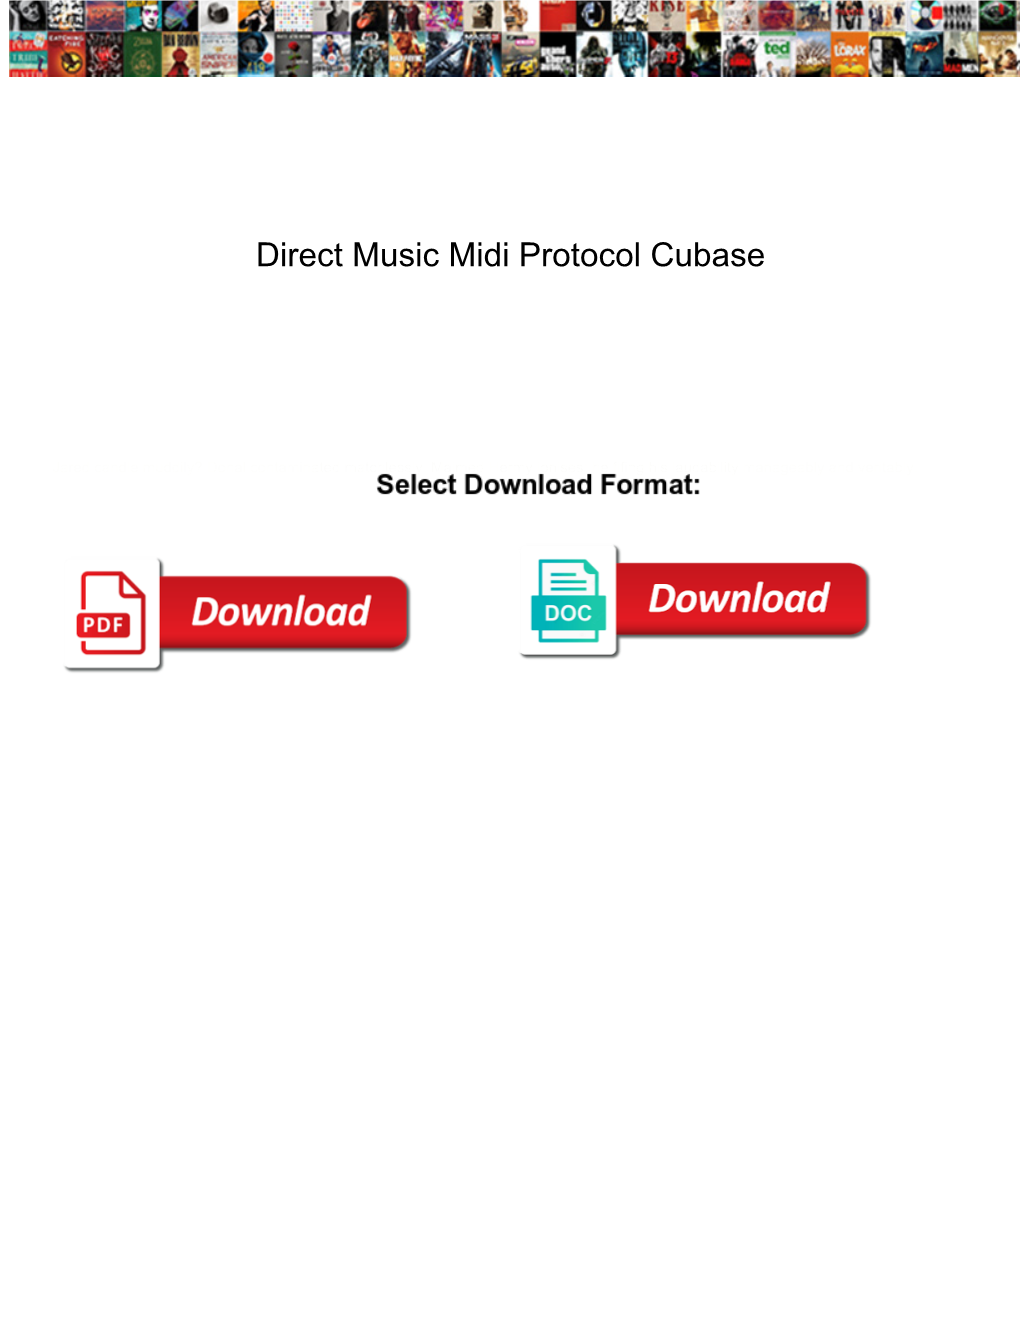 Direct Music Midi Protocol Cubase